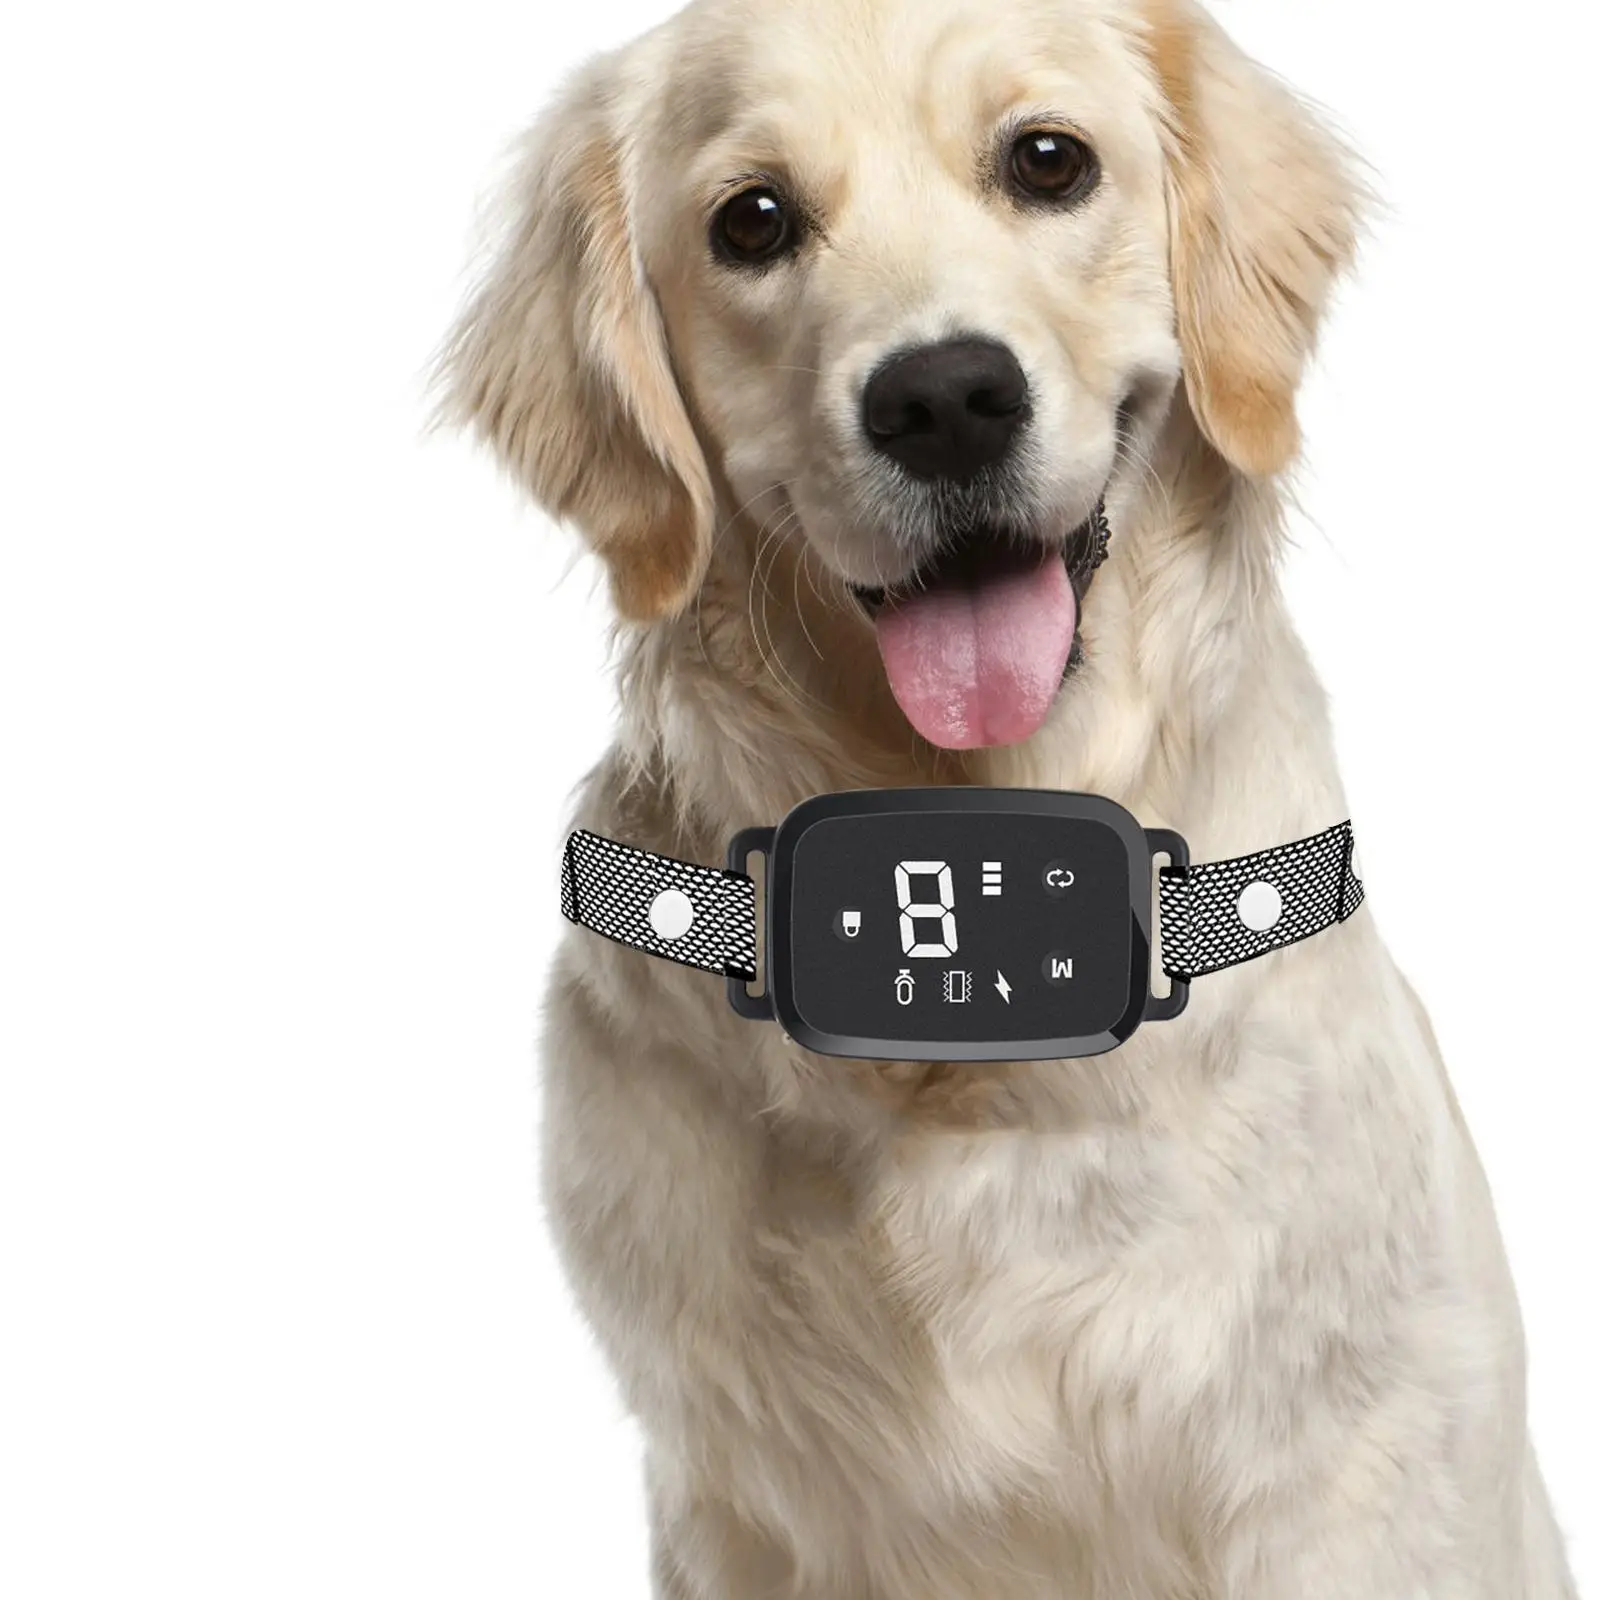 Dog Bark Collar Puppy LED Indicator Dog Training Device Dog Training Collar for Running Living Room Walking Household Indoors